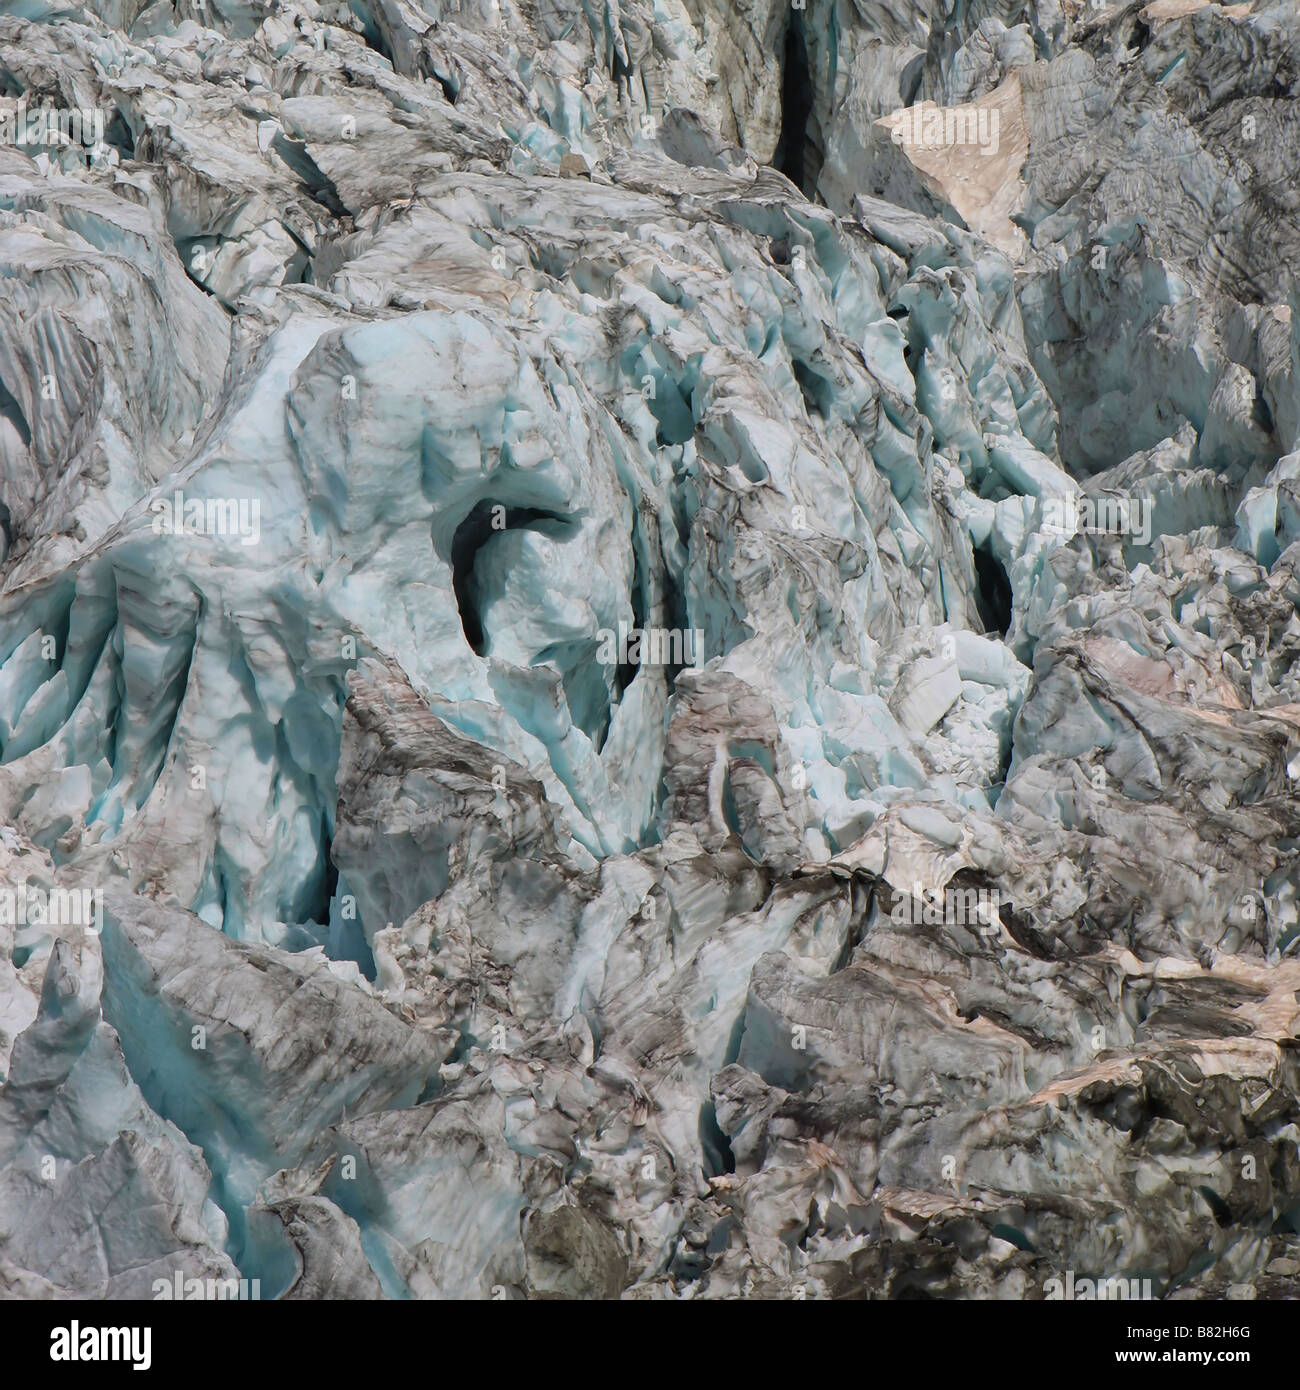 Crevasses of the Argentiere glacier, Chamonix Stock Photo